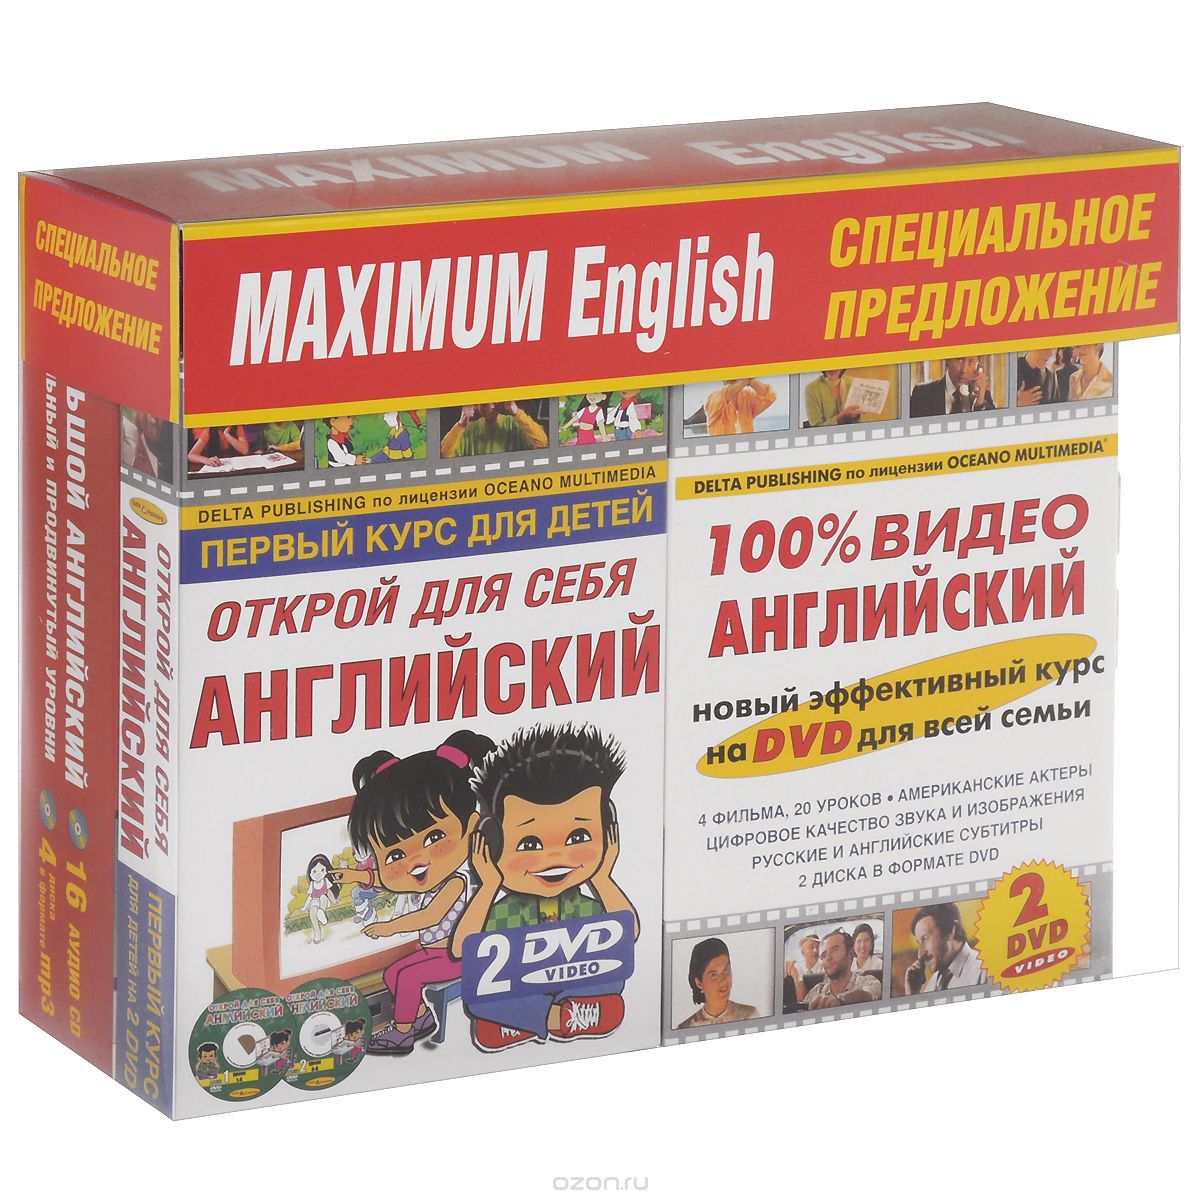 Скачать книгу "Maximum English. Комплект для всей семьи (комплект из 3 книг + 20 CD, 4 DVD)"